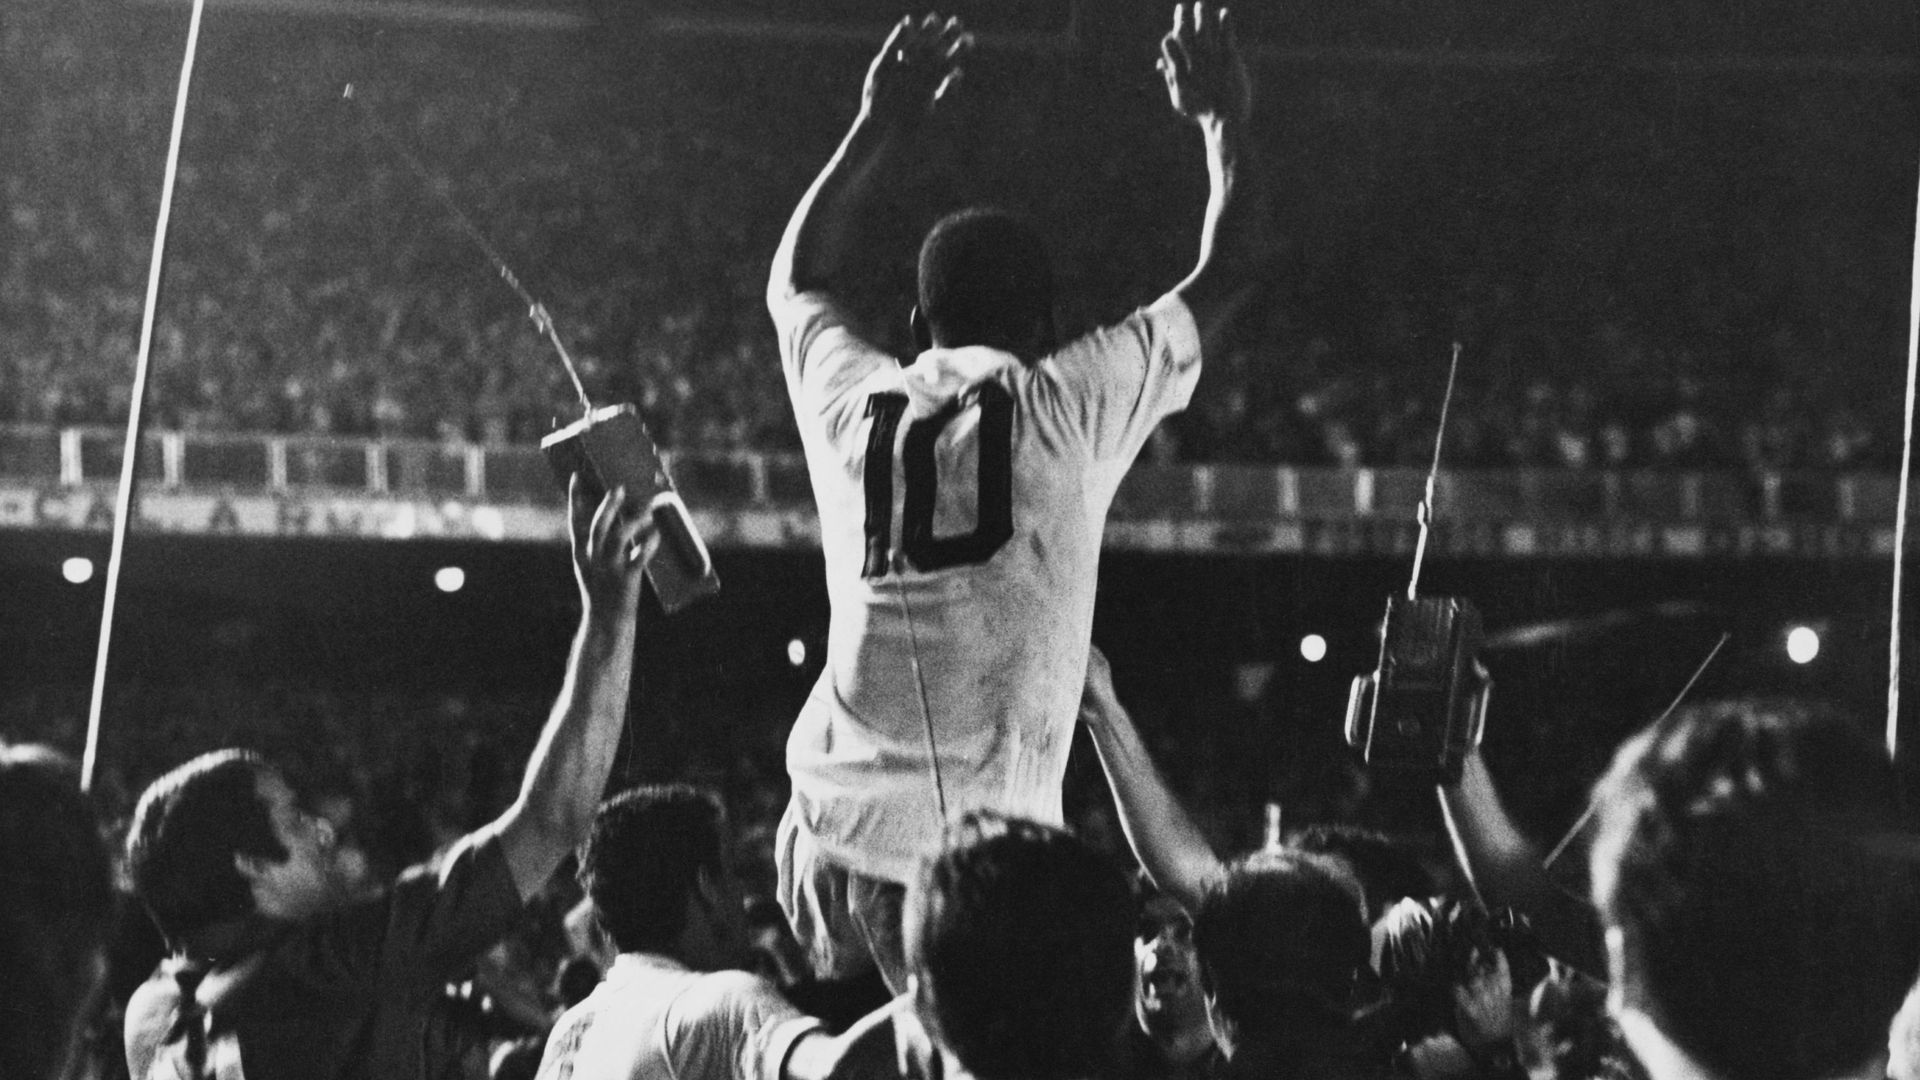 Pelé est soulevé par ses coéquipiers de Santos après avoir marqué le 1000e but de sa carrière lors d’un match contre Vasco da Gama au stade Maracana, Rio de Janeiro, Brésil, 19 novembre 1969. (Photo par Pictorial Parade/Archive Photos/Getty Images)